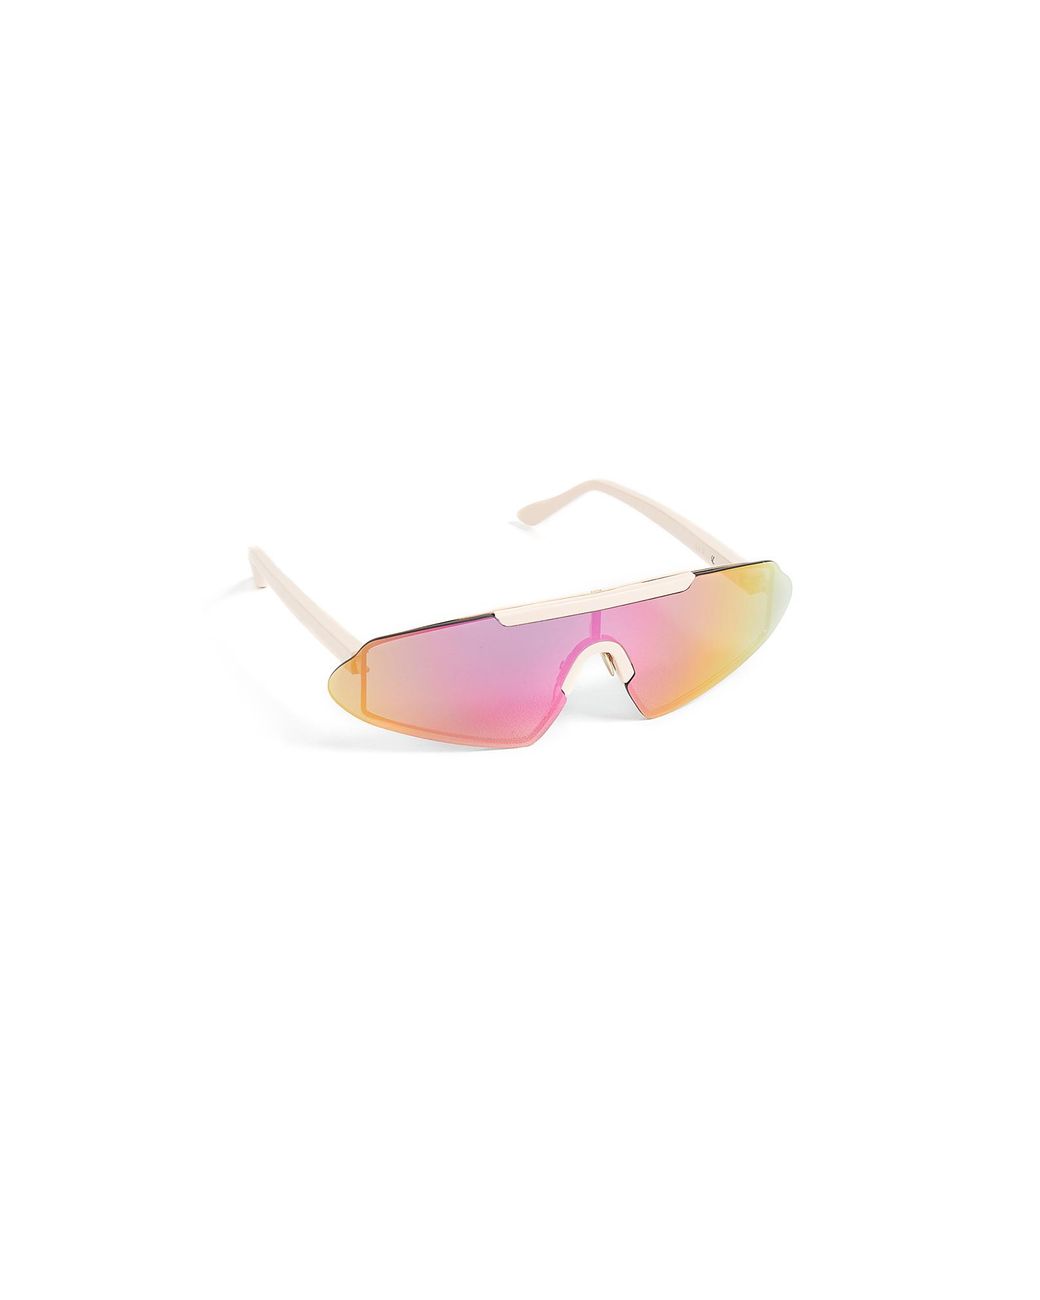 Studios Bornt Sunglasses in Pink |